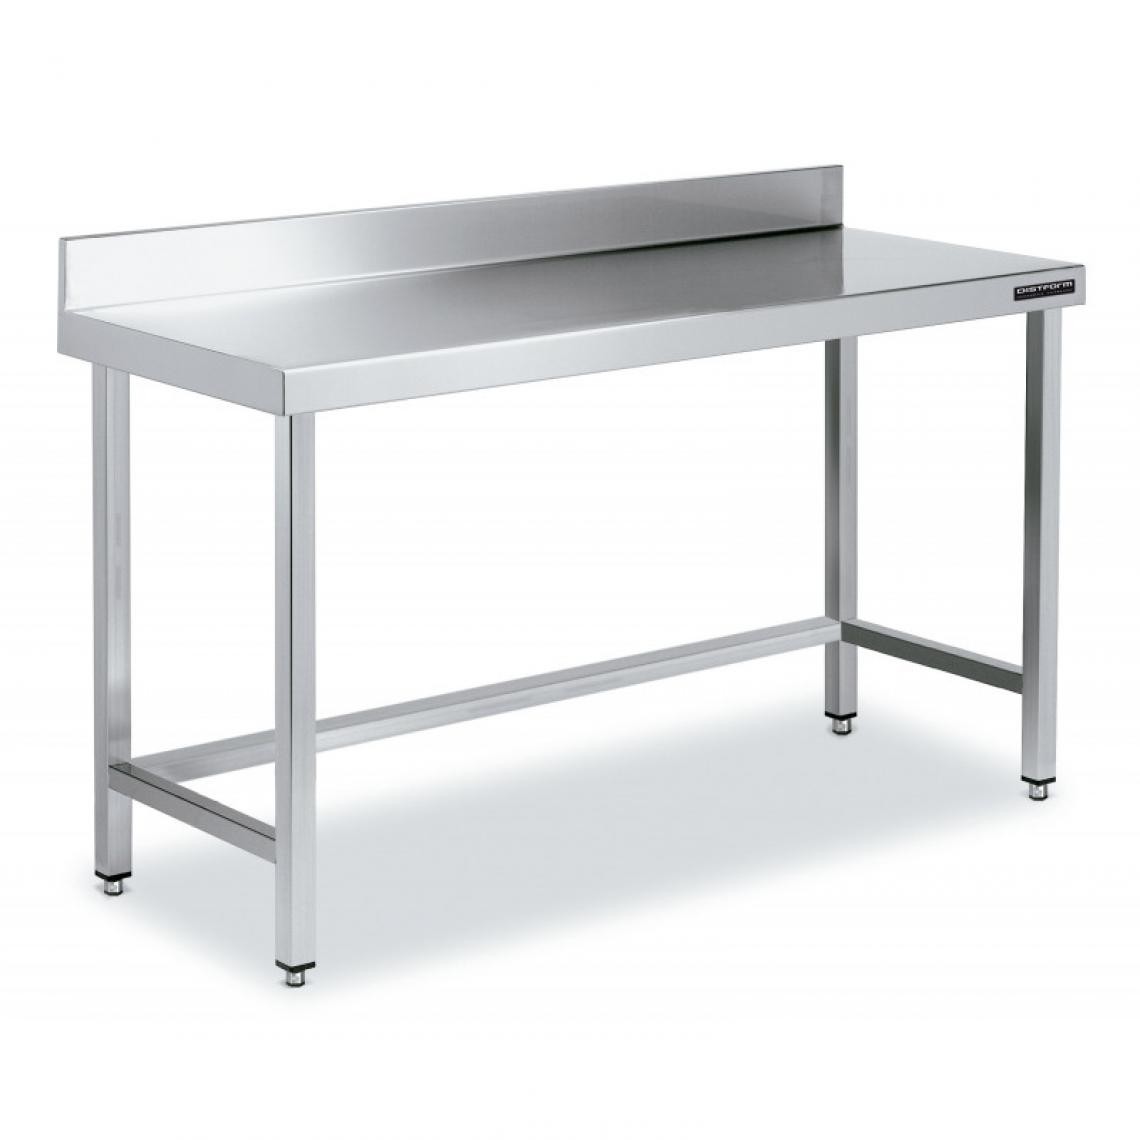 DISTFORM - Table de Travail Adossée Inox avec Renforts - Gamme 600 - Hauteur 600 - Distform - Acier inoxydable2800x600 - Tables à manger